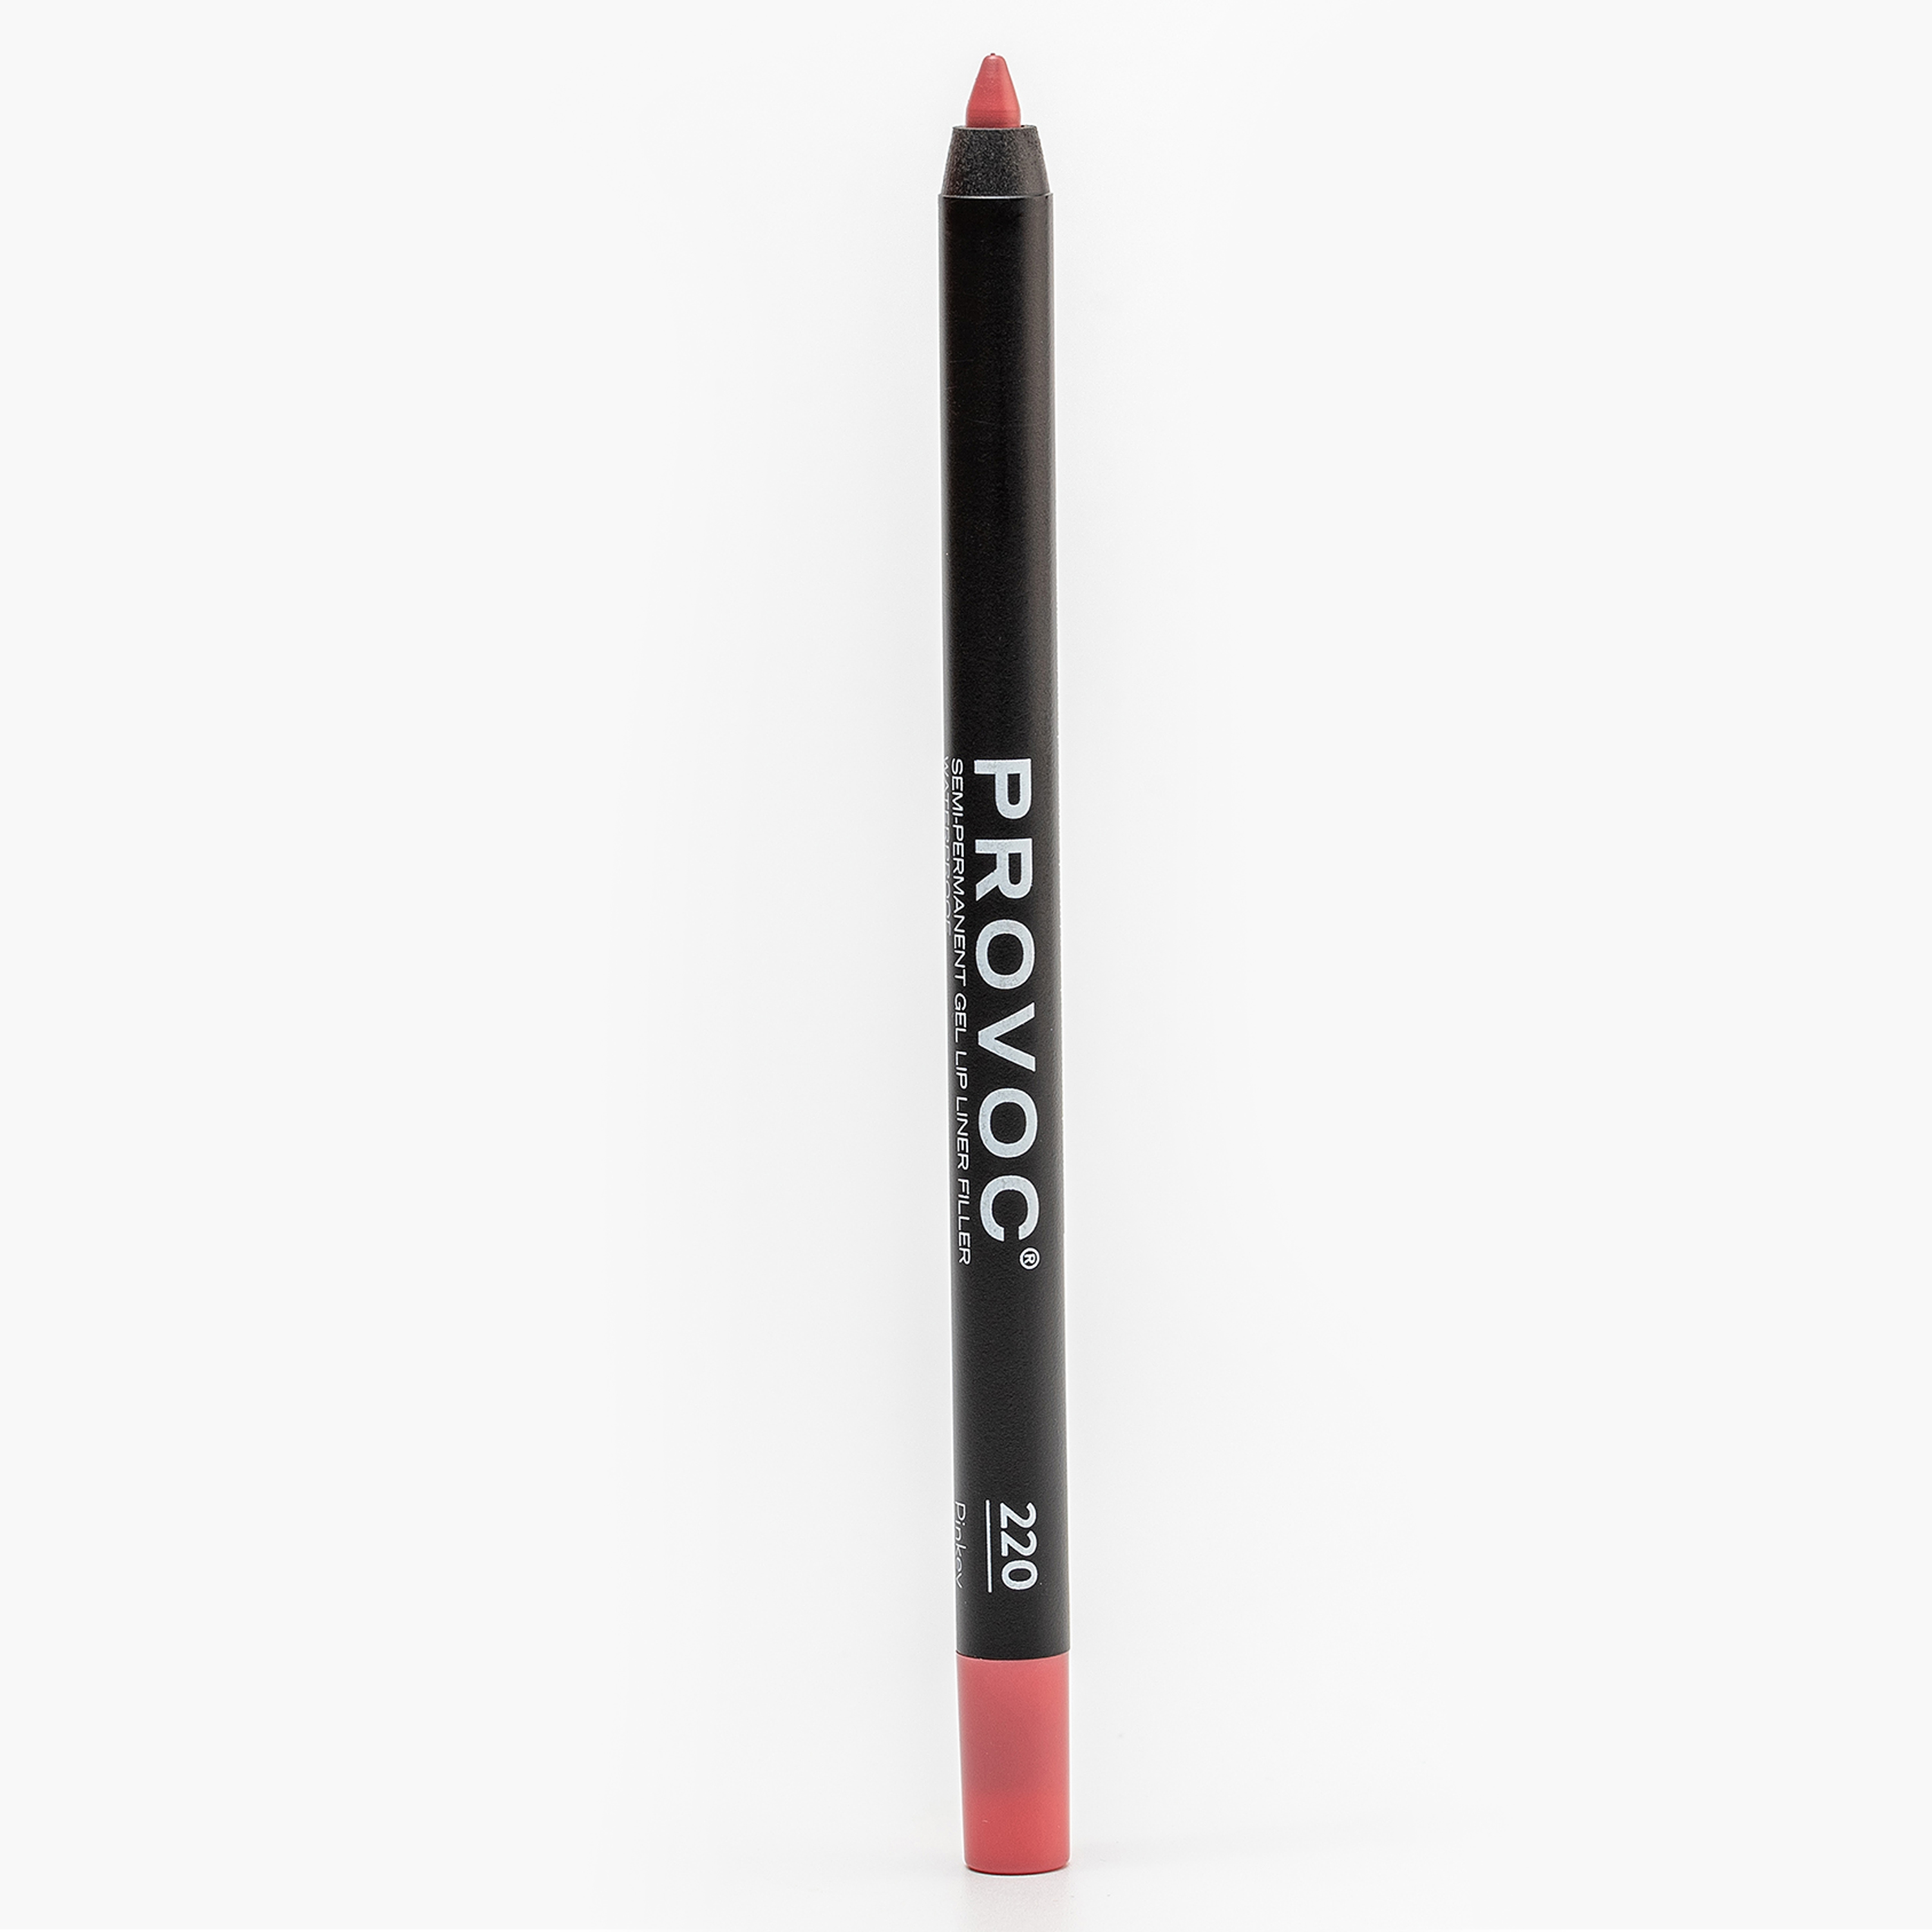 Карандаш для губ PROVOC Gel Lip Liner гелевый, №220 Pinkey розово-бежево-лососевый, 1,2 г карандаш для губ provoc gel lip liner hide